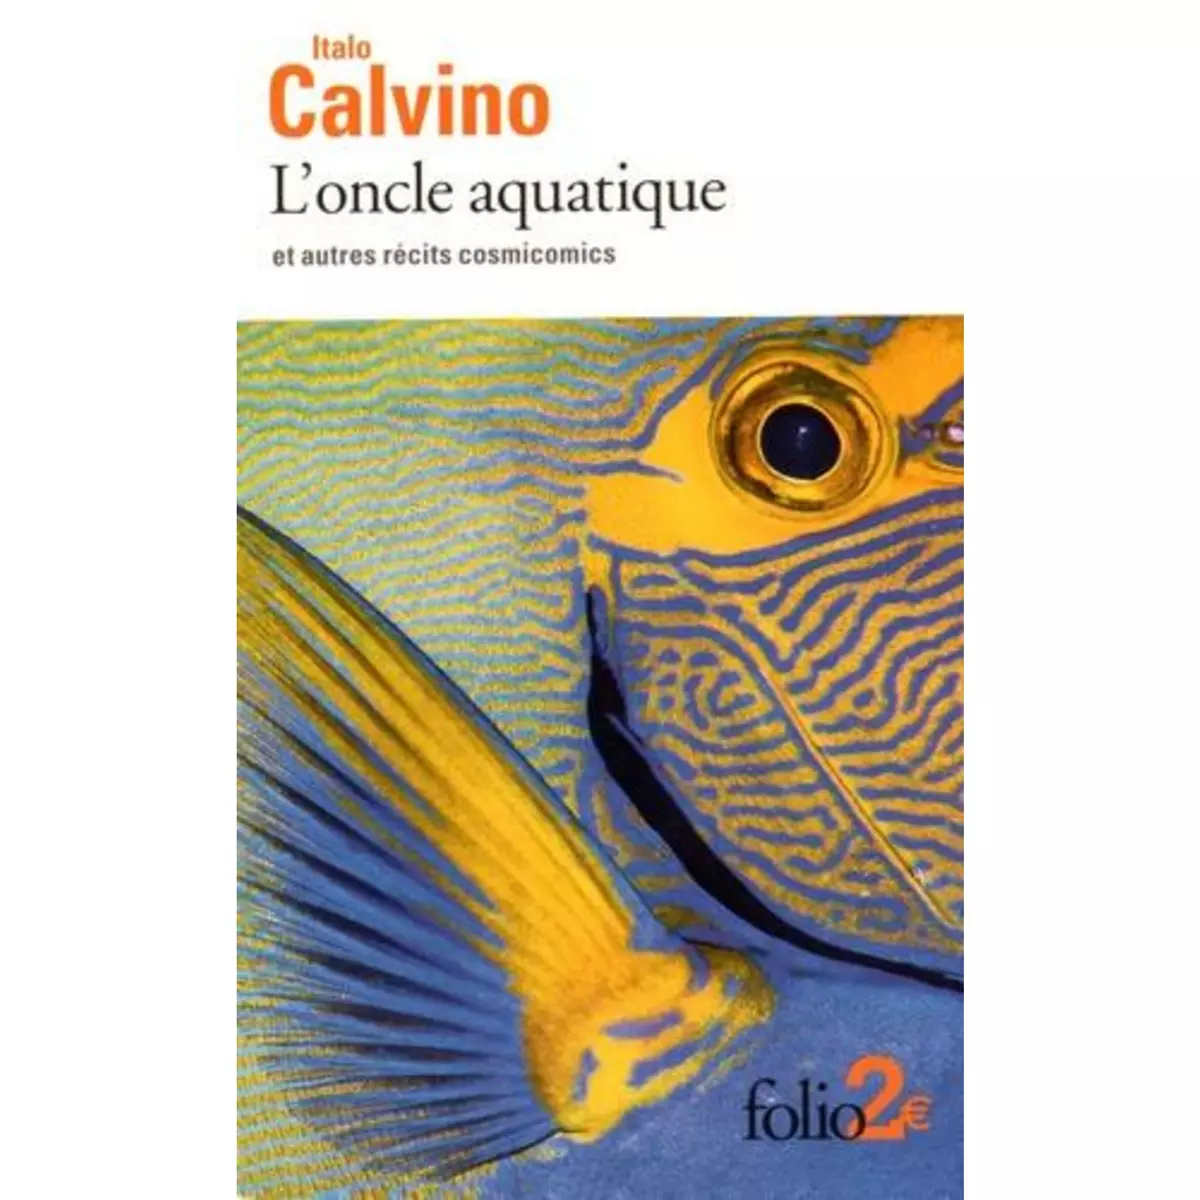  L'ONCLE AQUATIQUE ET AUTRES RECITS COSMICOMICS, Calvino Italo